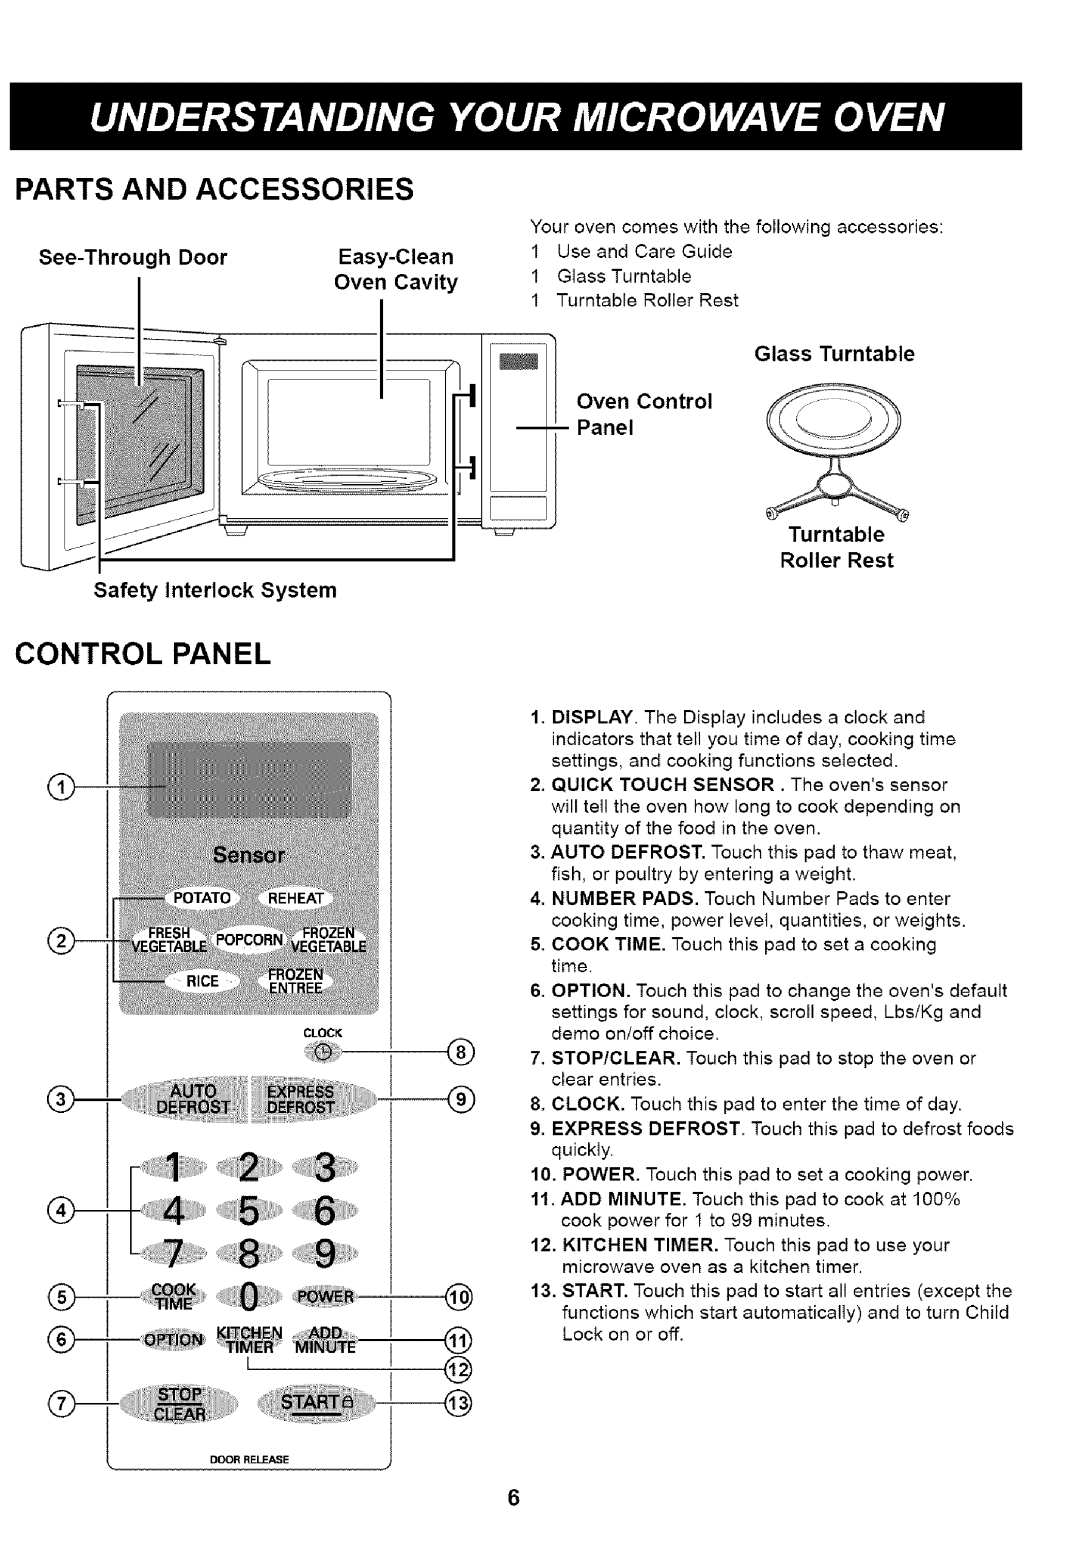 Kenmore 721.61283 Parts And Accessories, Panel, Oven Control, iiiiiiiiiiiiSiiiiiili,,iilSiiiiiii,¸, Quick, to enter 